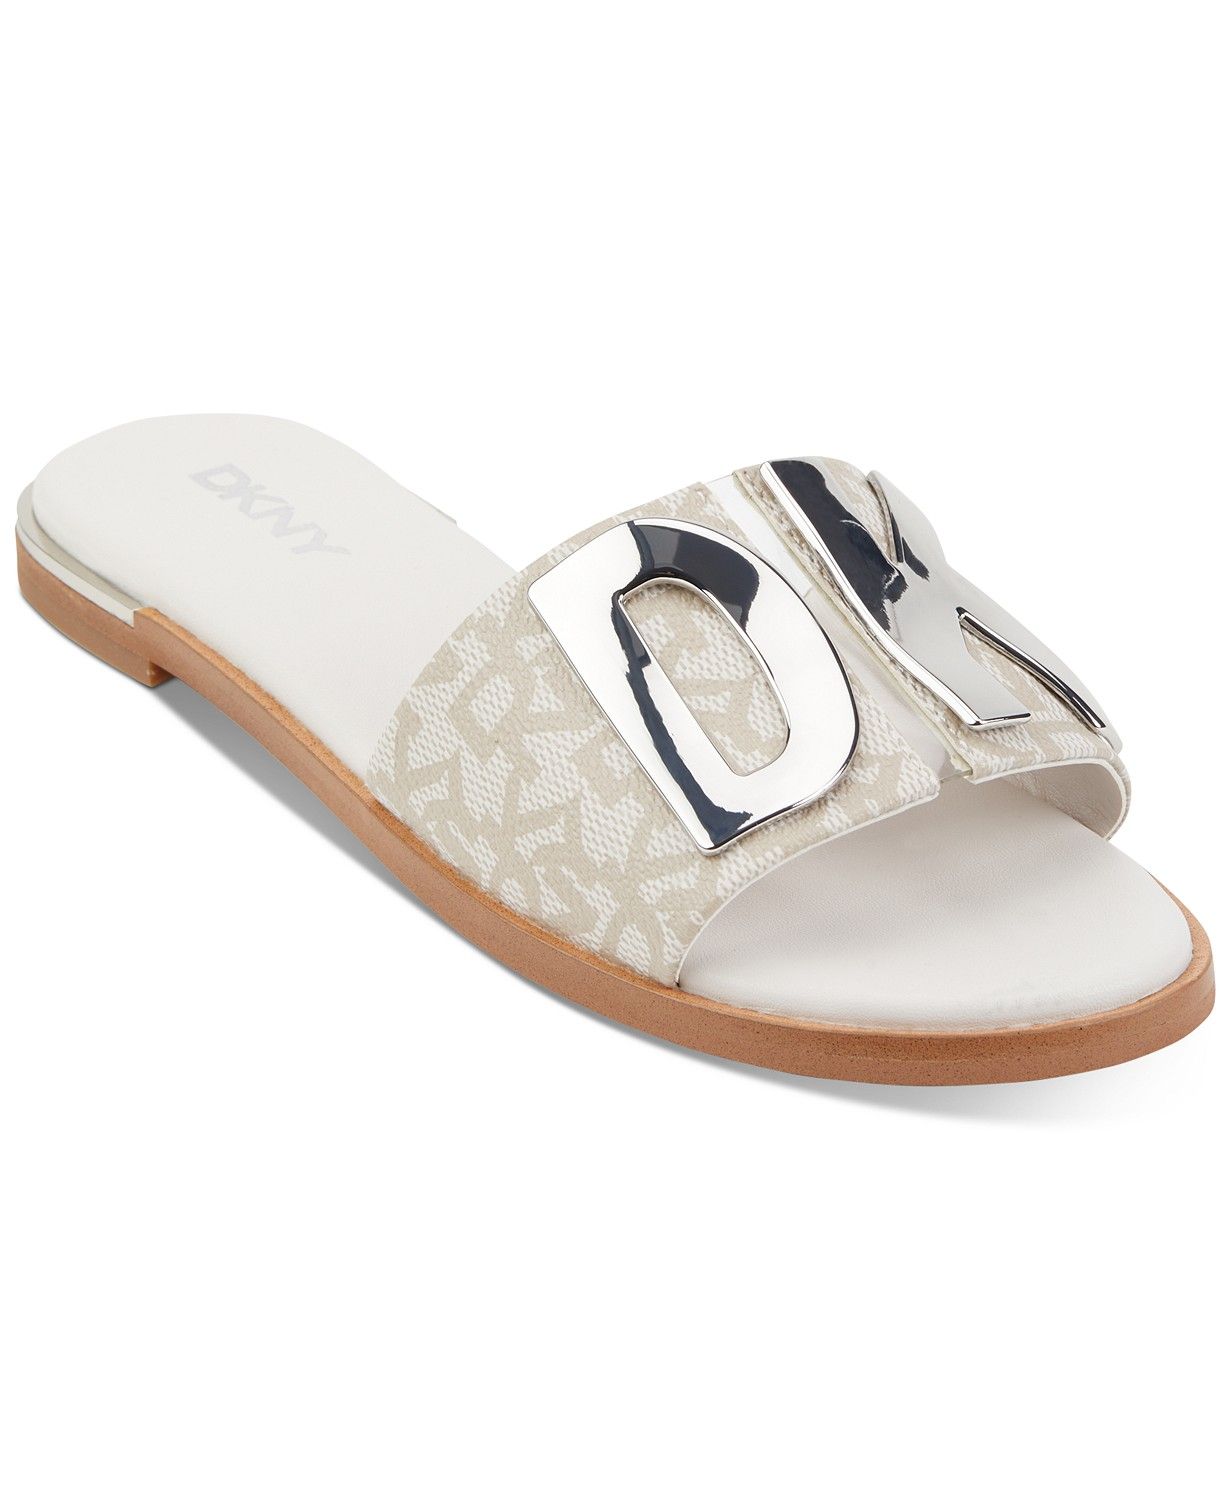 DKNY
          
  
  
      
          Women's Waltz Flat Sandals
      
  
  



  Web ID: 10996... | Macys (US)